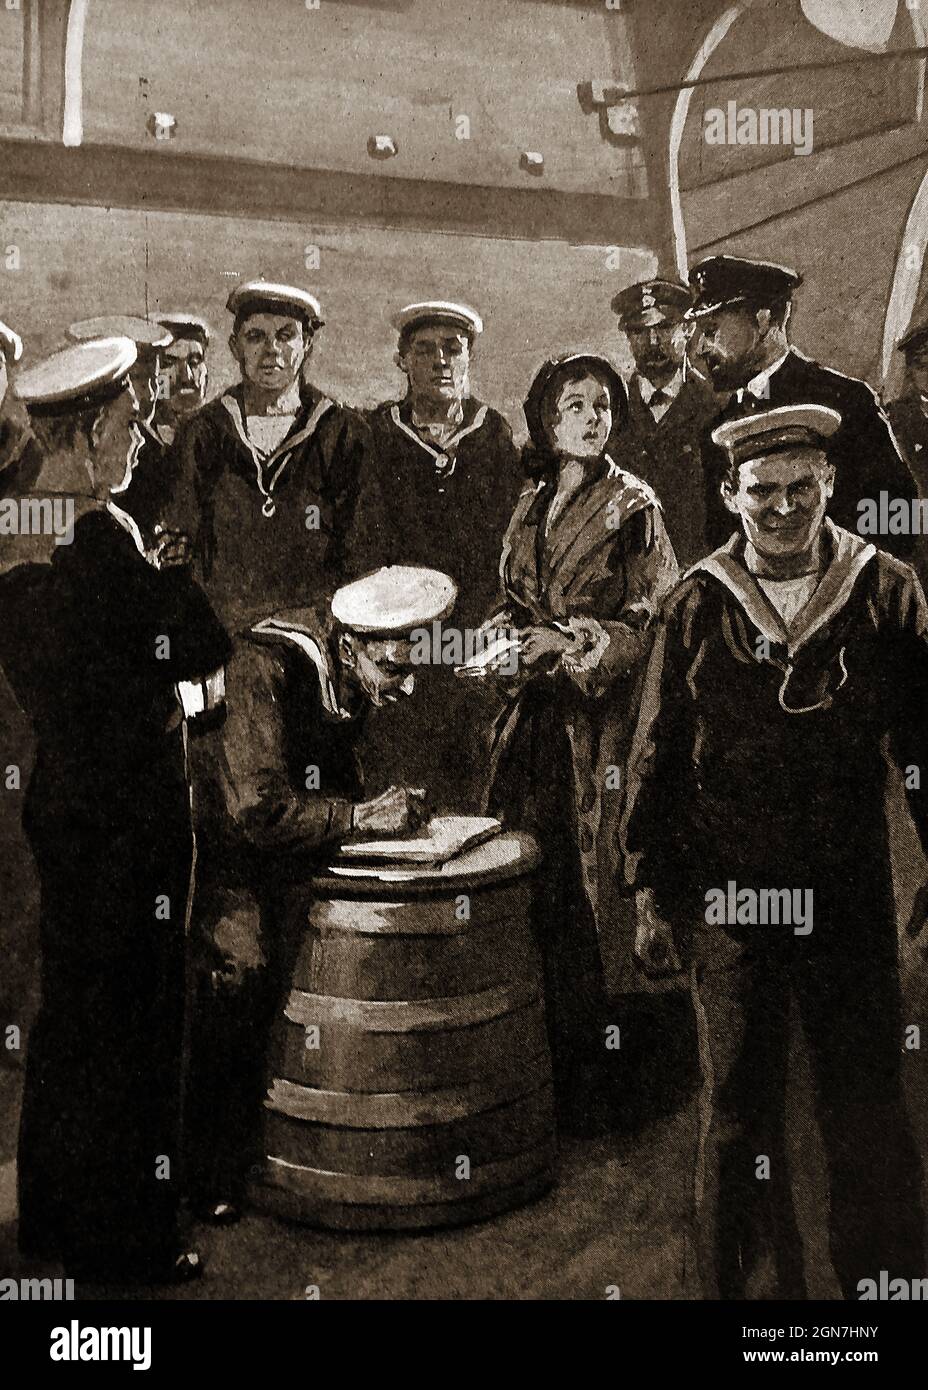 Medienbild der 1930er Jahre von 60 Jack Tars (britische Matrosen), die nach Anhörung eines Vortrags von Agnes Weston (im Bild mit dem Kapitän) an Bord der HMS Topaze eine Mäßigung unterschrieben hatten. Ironischerweise fand die Unterzeichnung auf einem Rumfass statt. Stockfoto